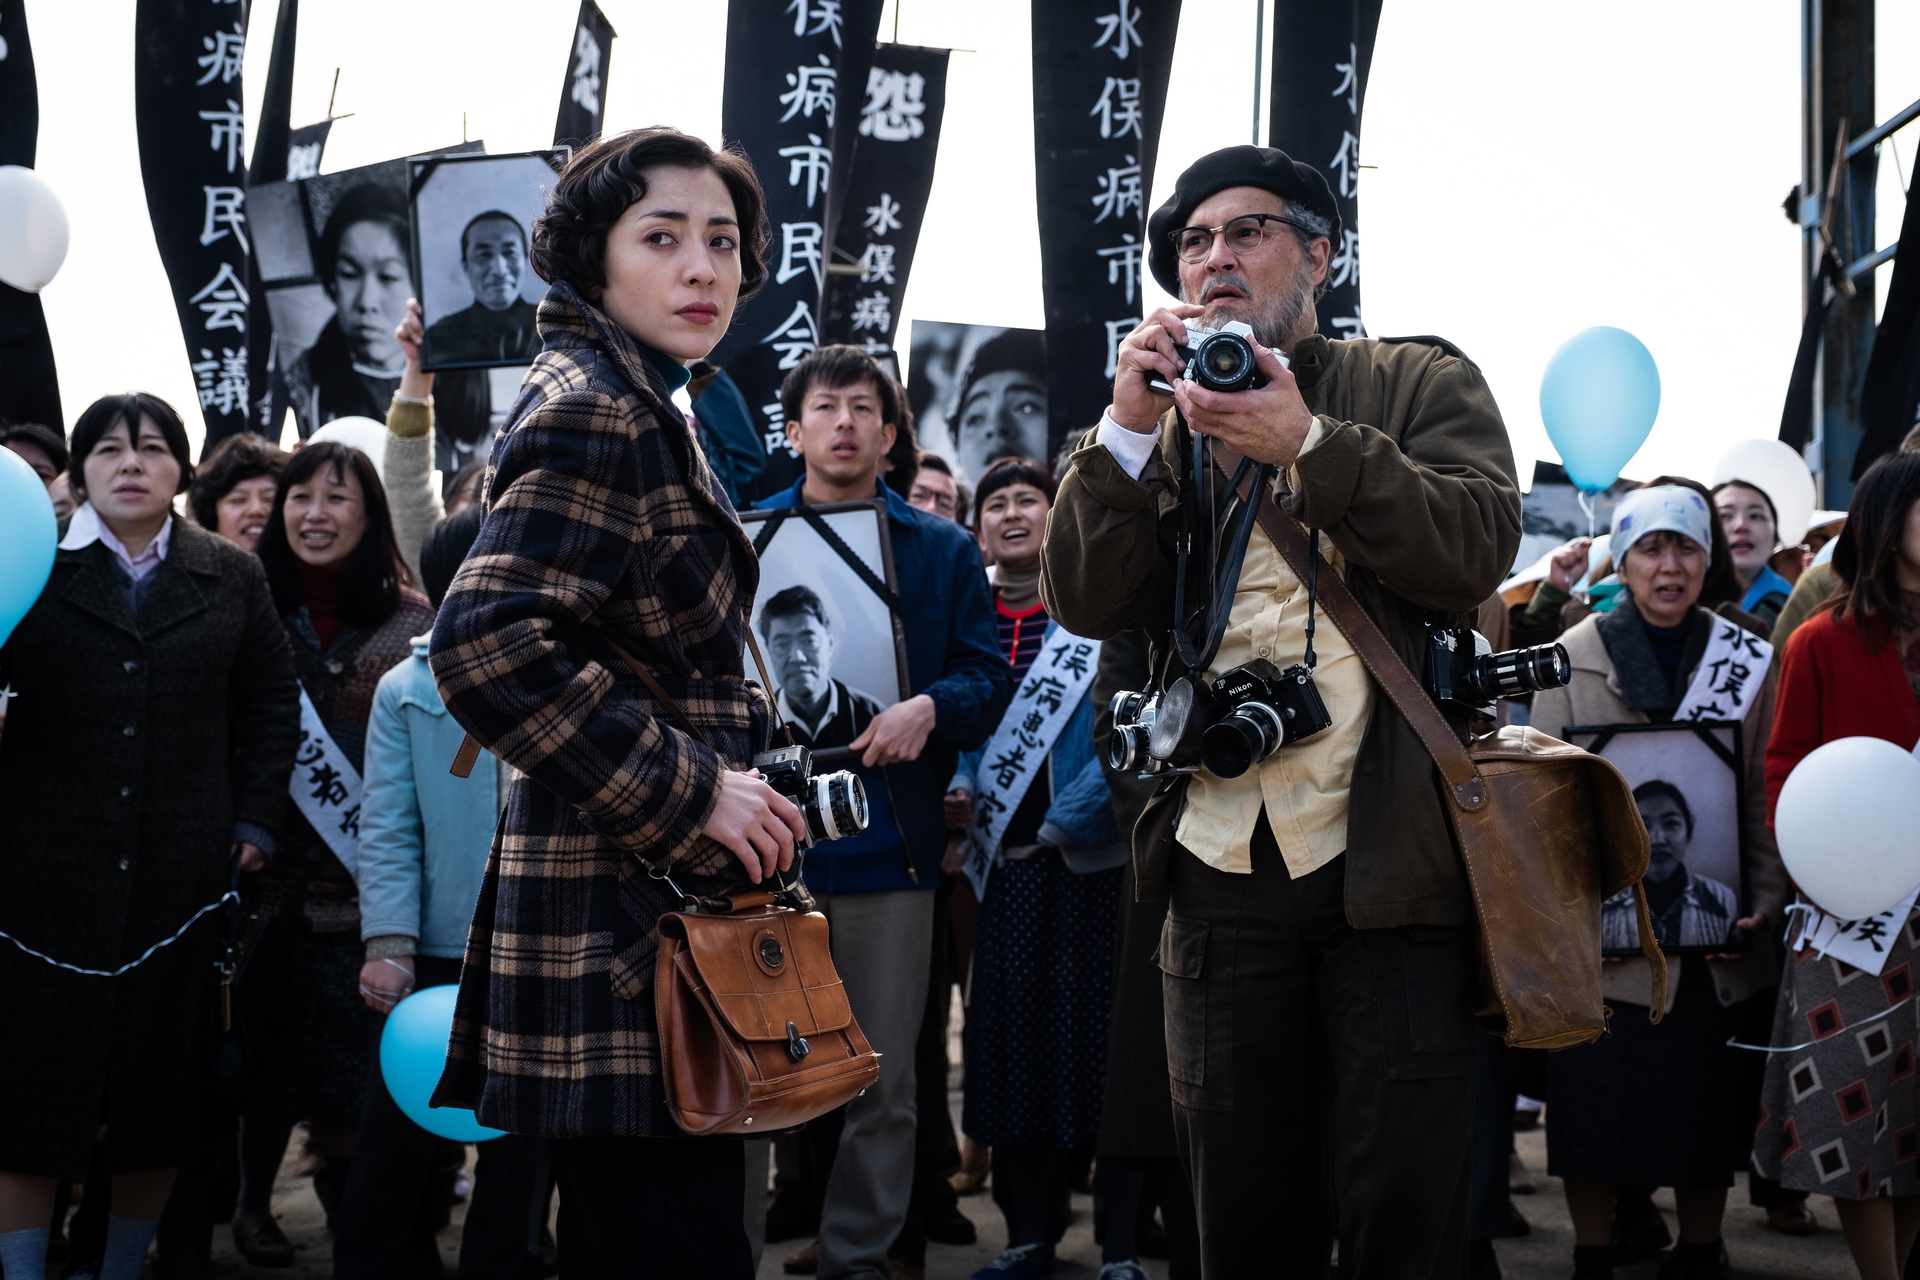 جان کریستوفر دپ دوم در صحنه فیلم سینمایی میناماتا به همراه Minami